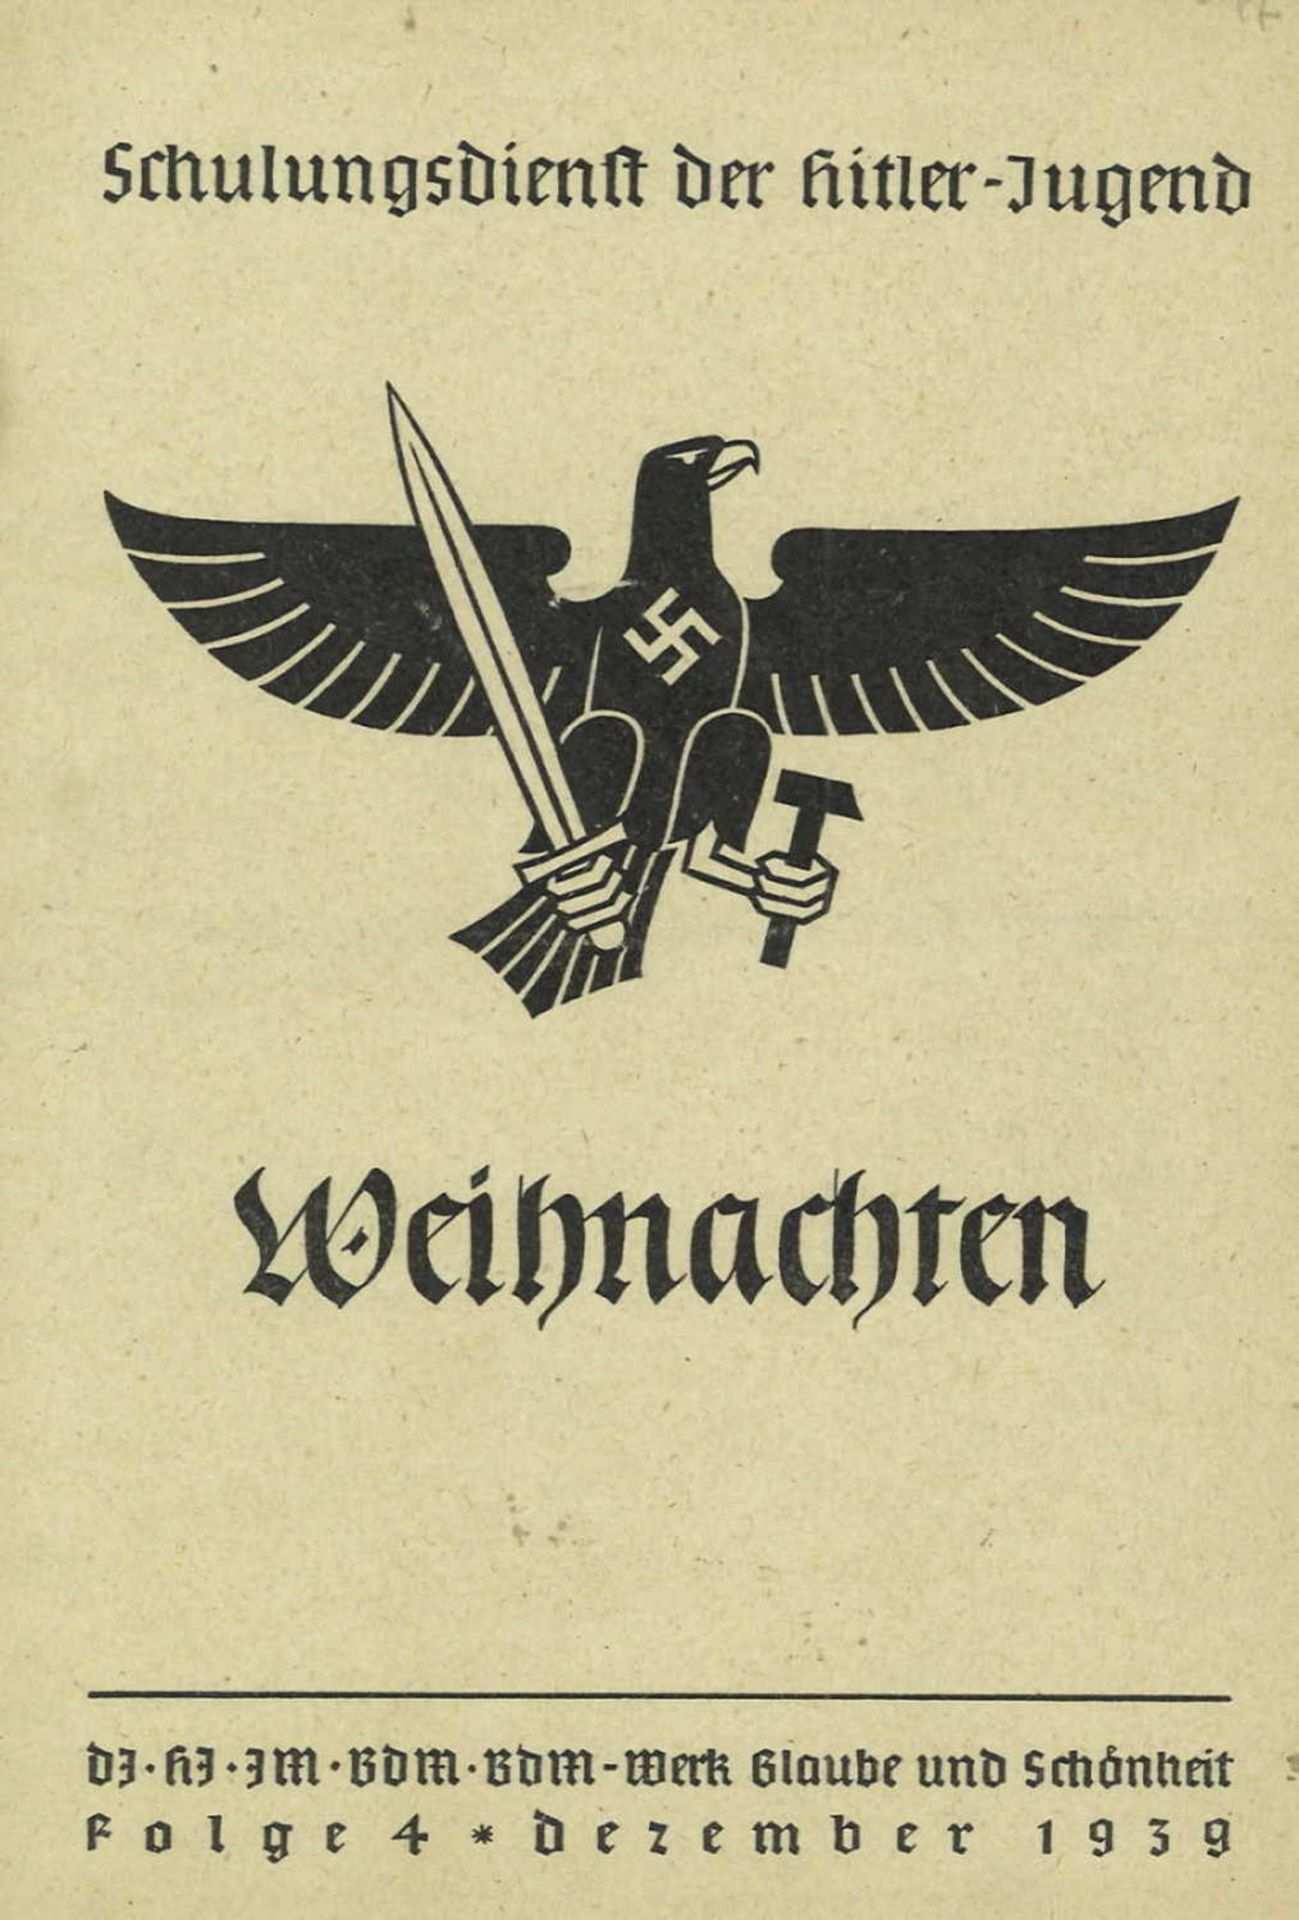 "Weihnachten" - Schulungsdienst der Hitler-Jugend, DJ - HJ - JM - BDM - BDM-Wer Glaube und